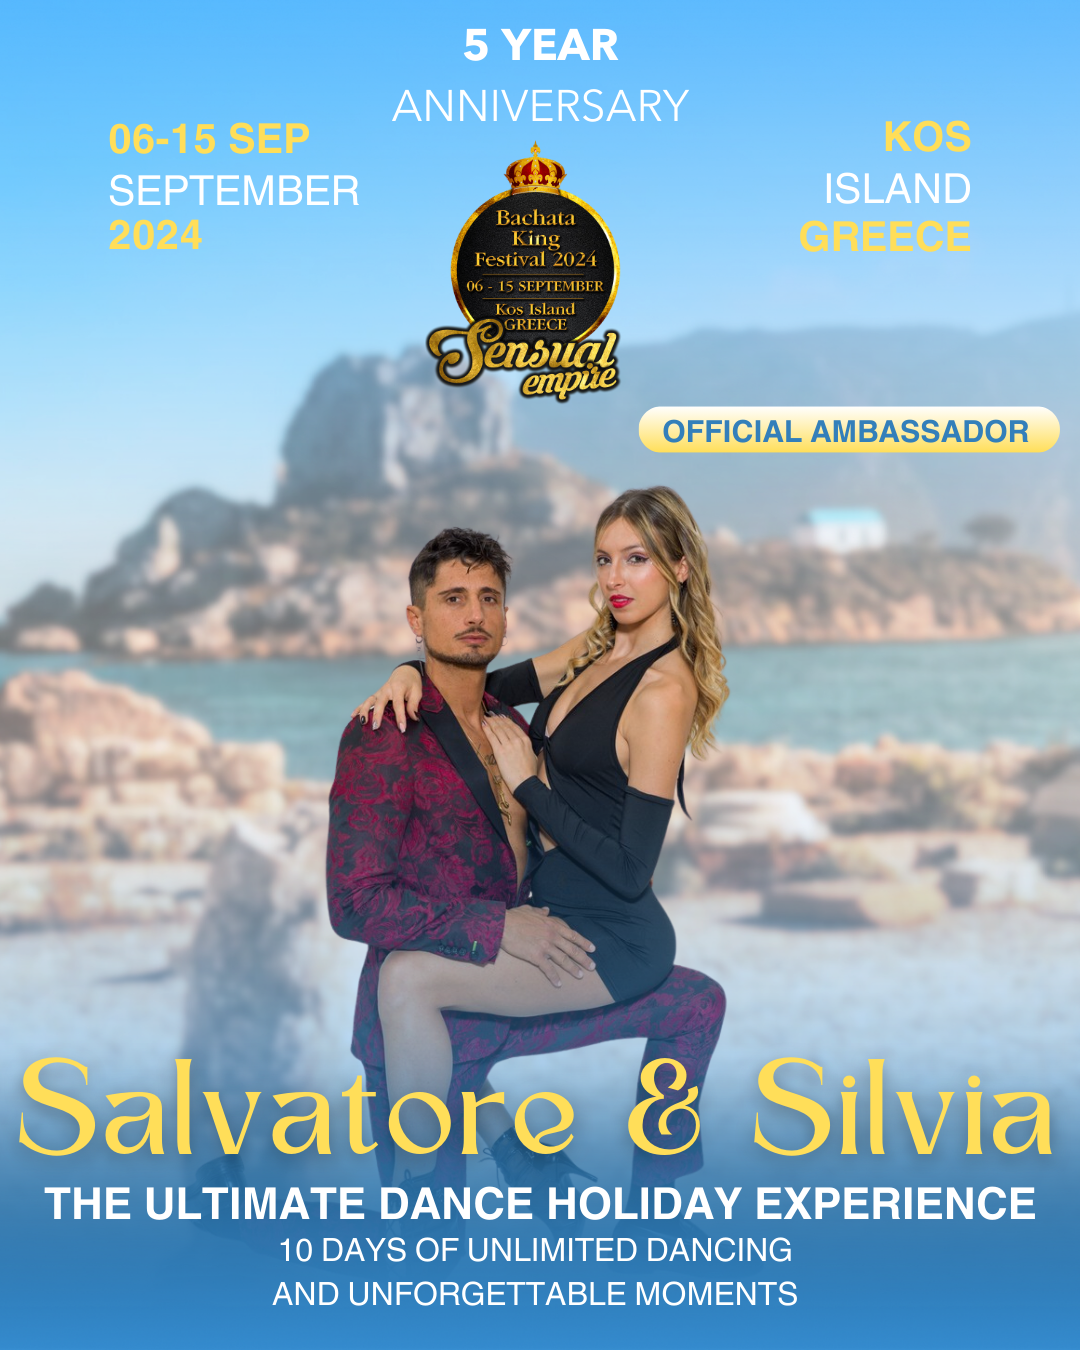 Salvatore & Silvia